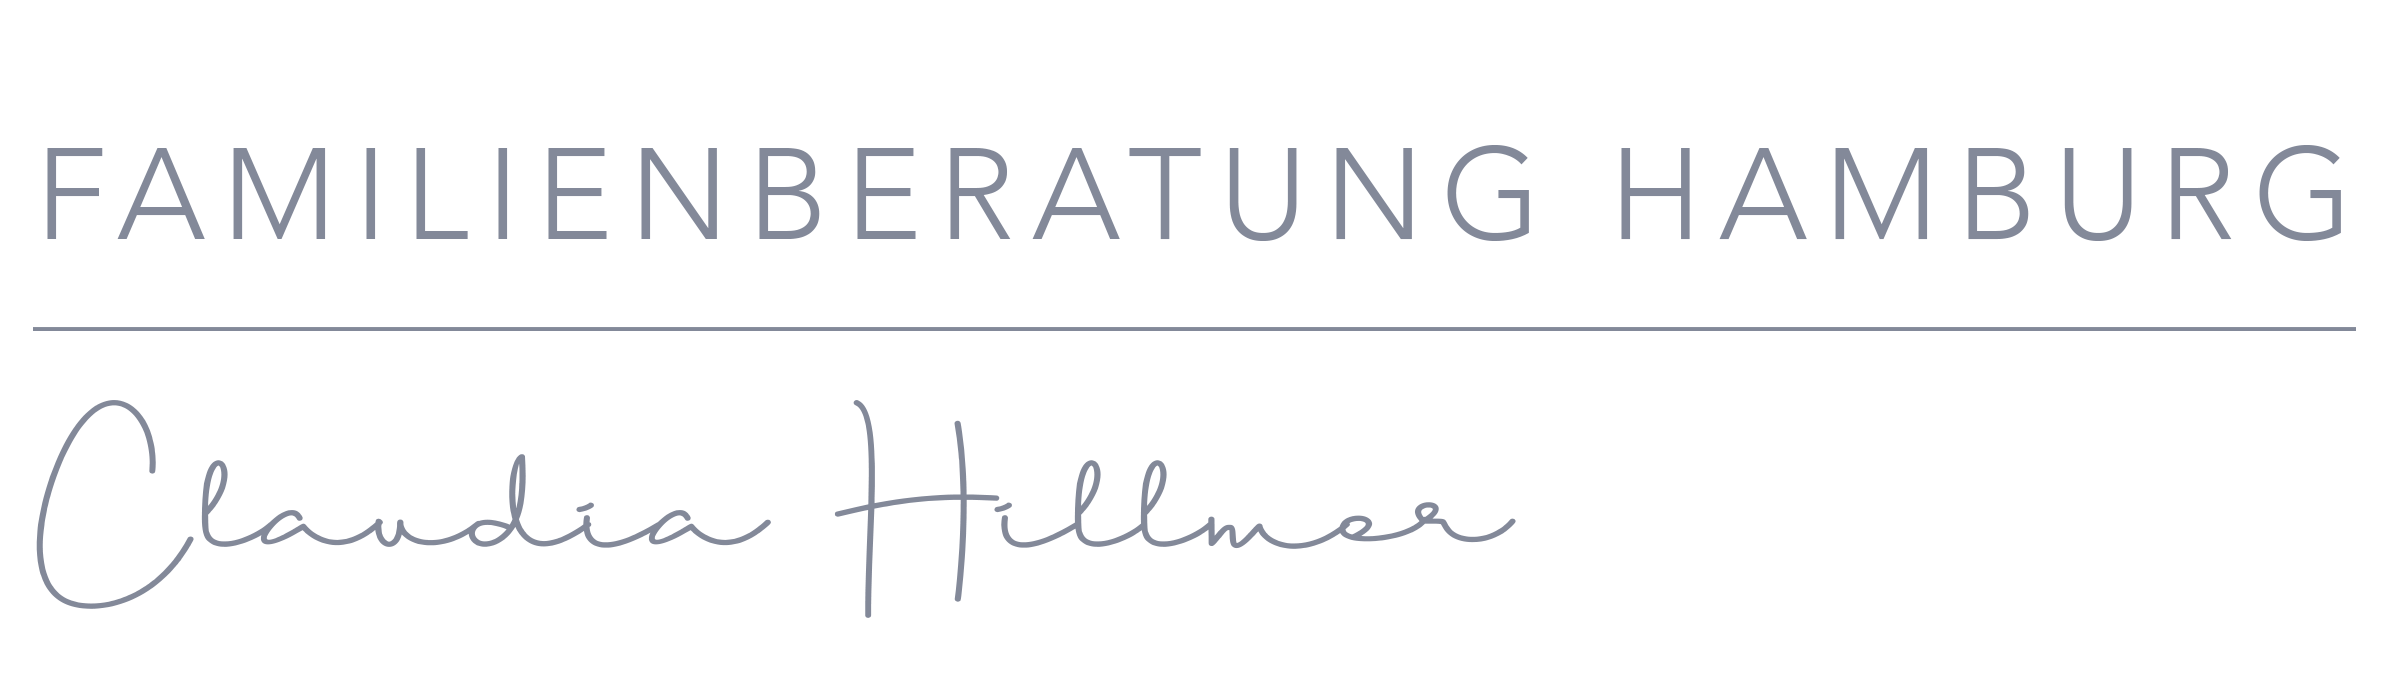 logo_Beratung_Handschrift